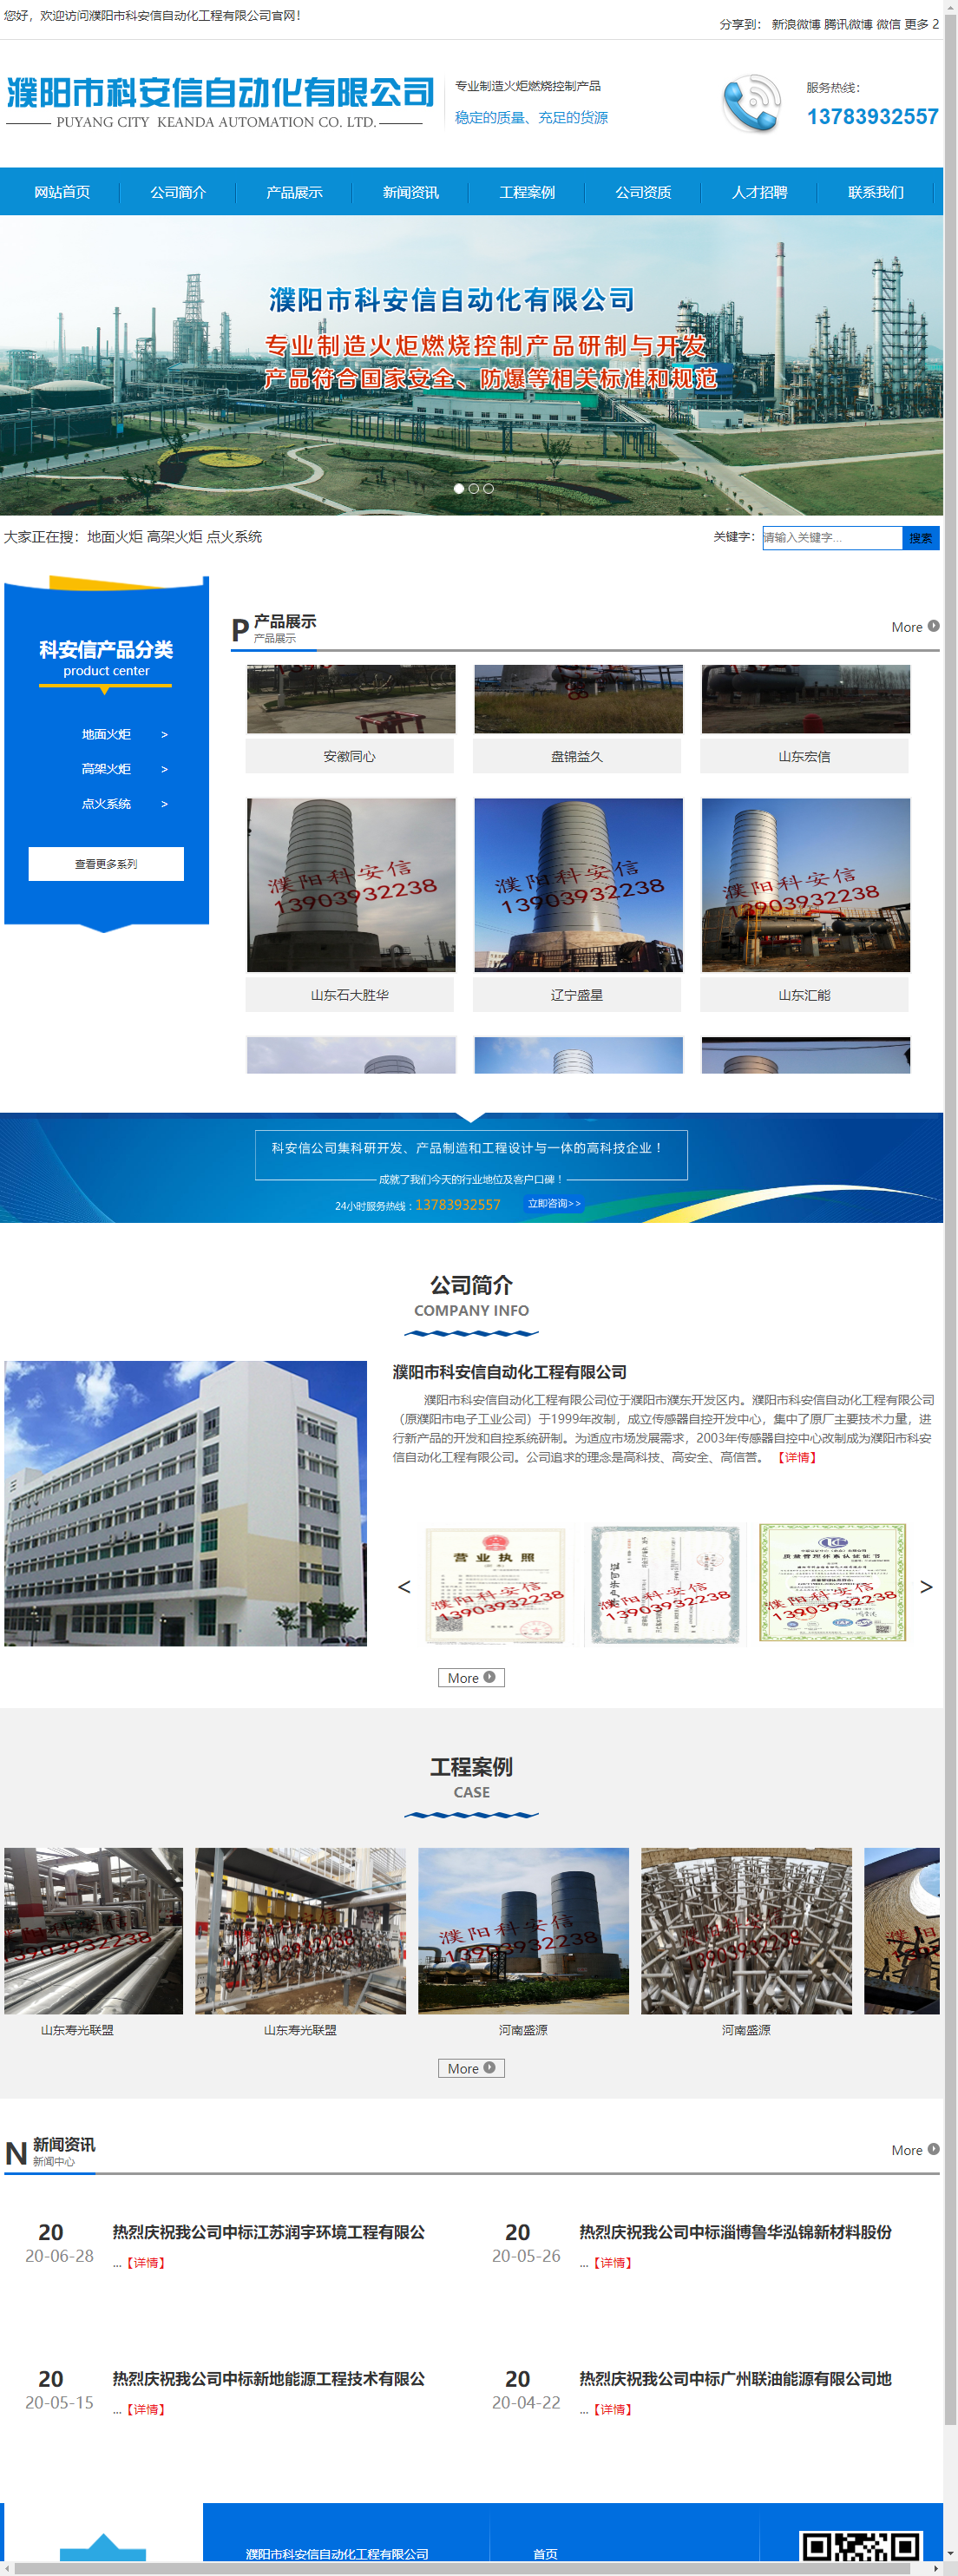 濮阳市科安信自动化工程有限公司网站案例